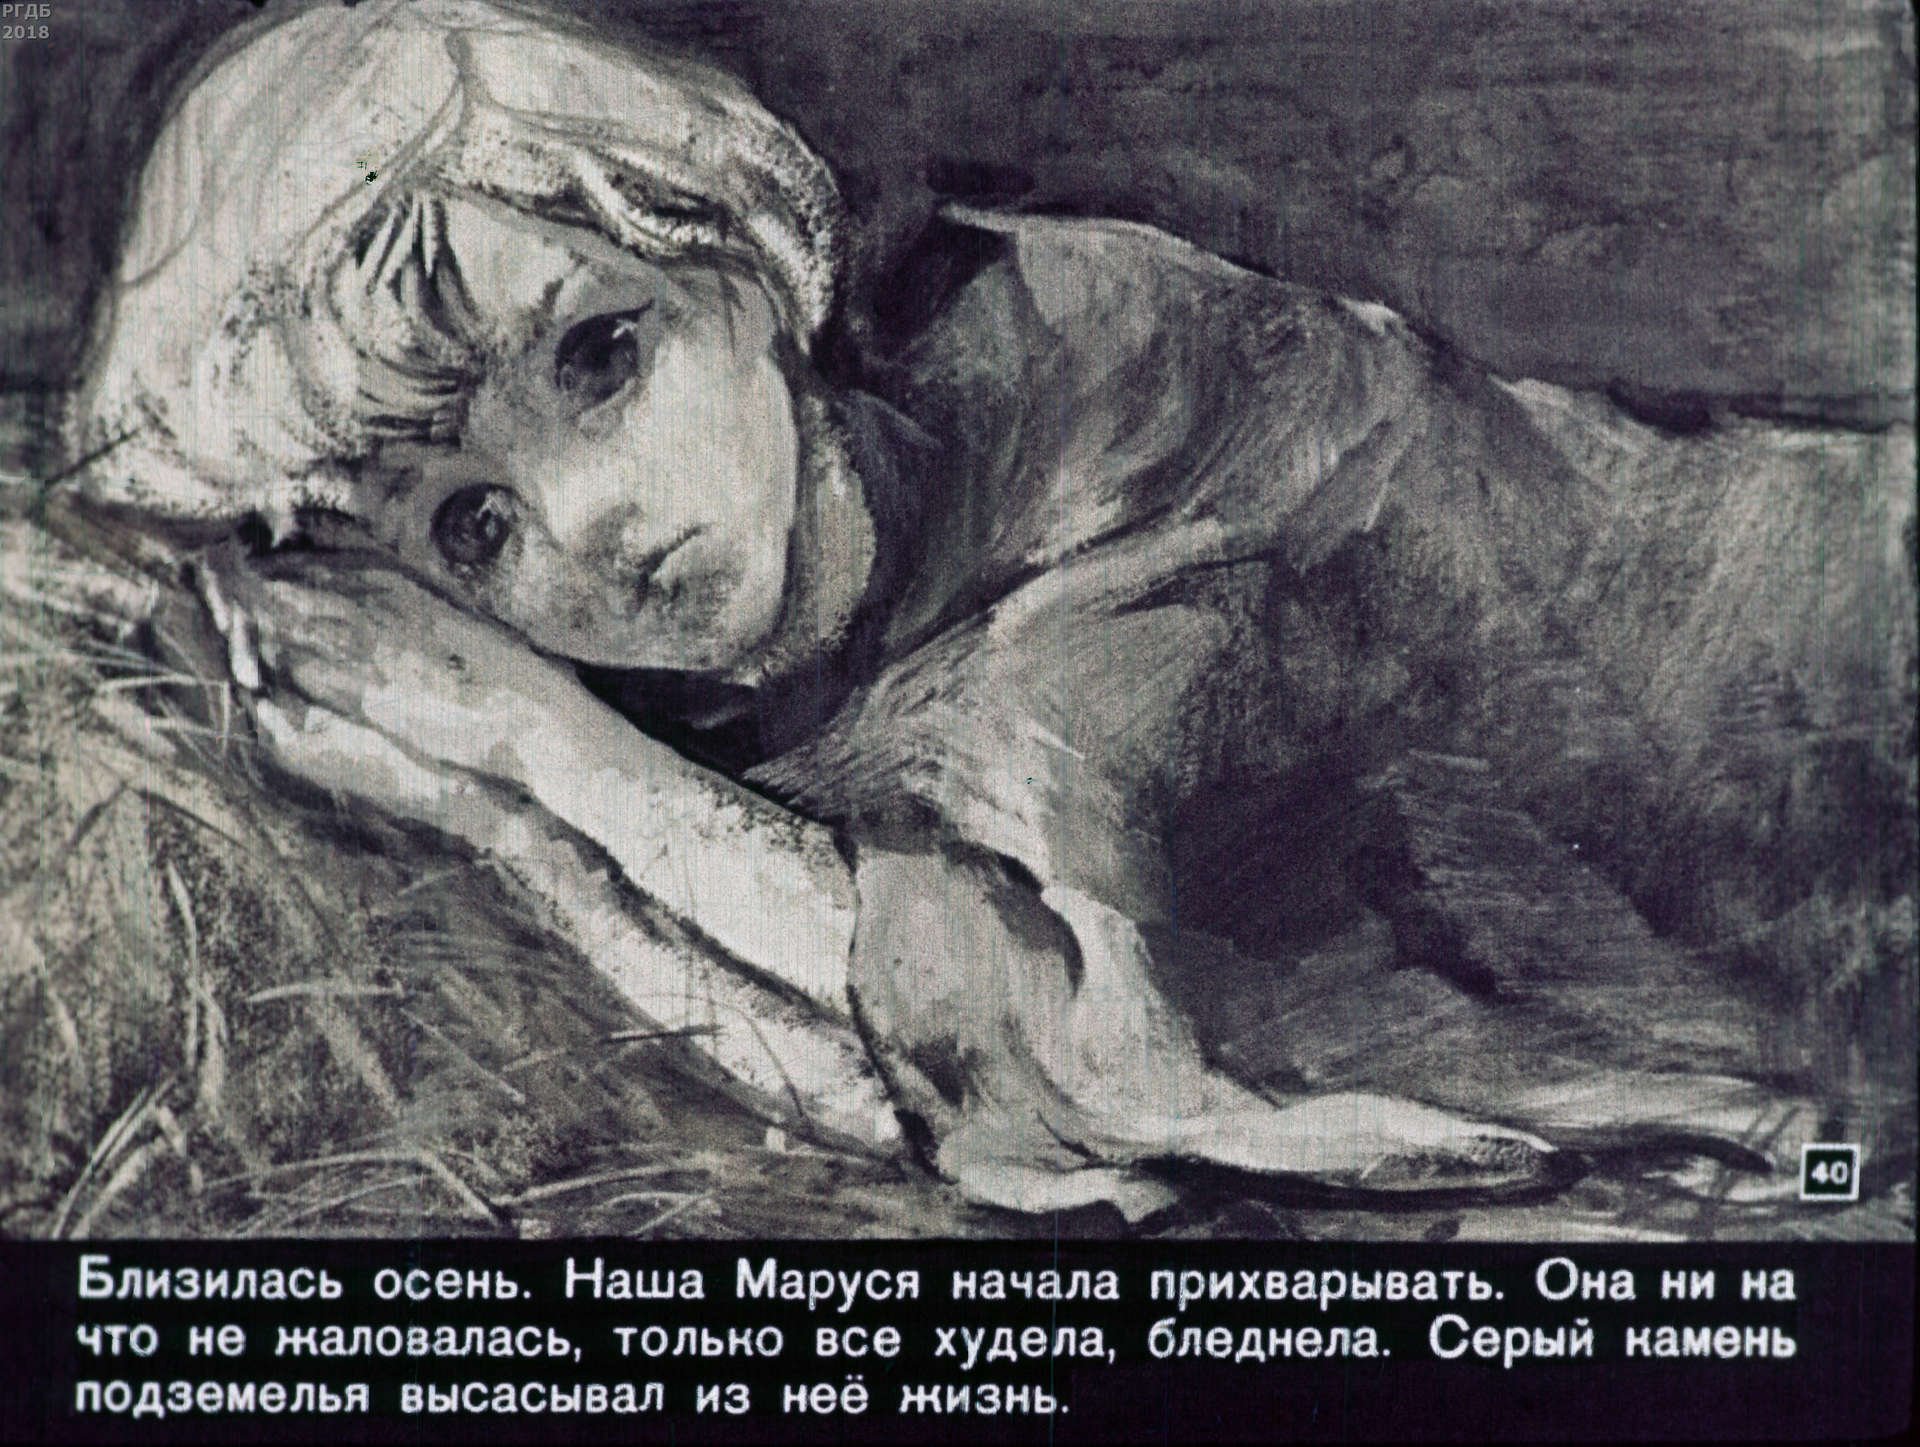 Сестра васи в дурном обществе. Рисунок Маруси Короленко в дурном обществе. Дети подземелья Короленко Вася.